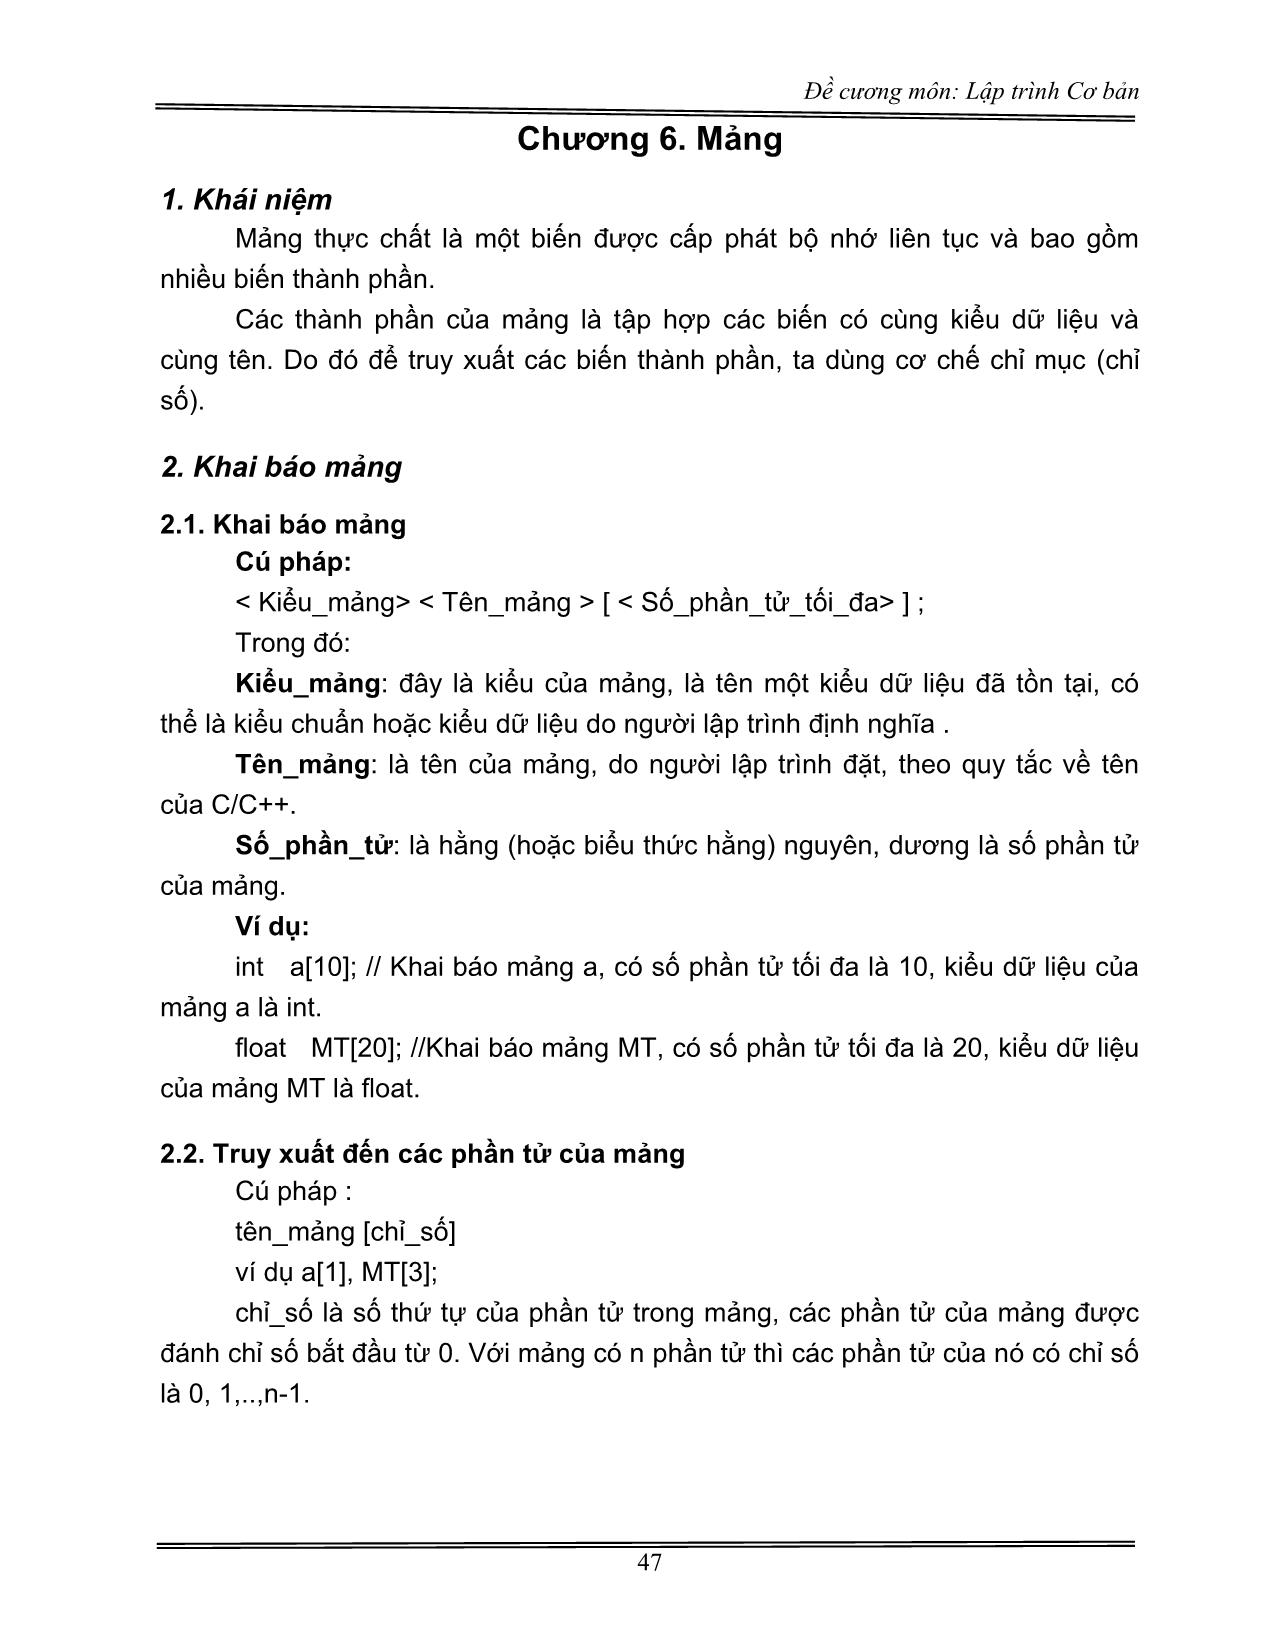 Đề cương môn Lập trình Cơ bản (Phần 2) trang 6